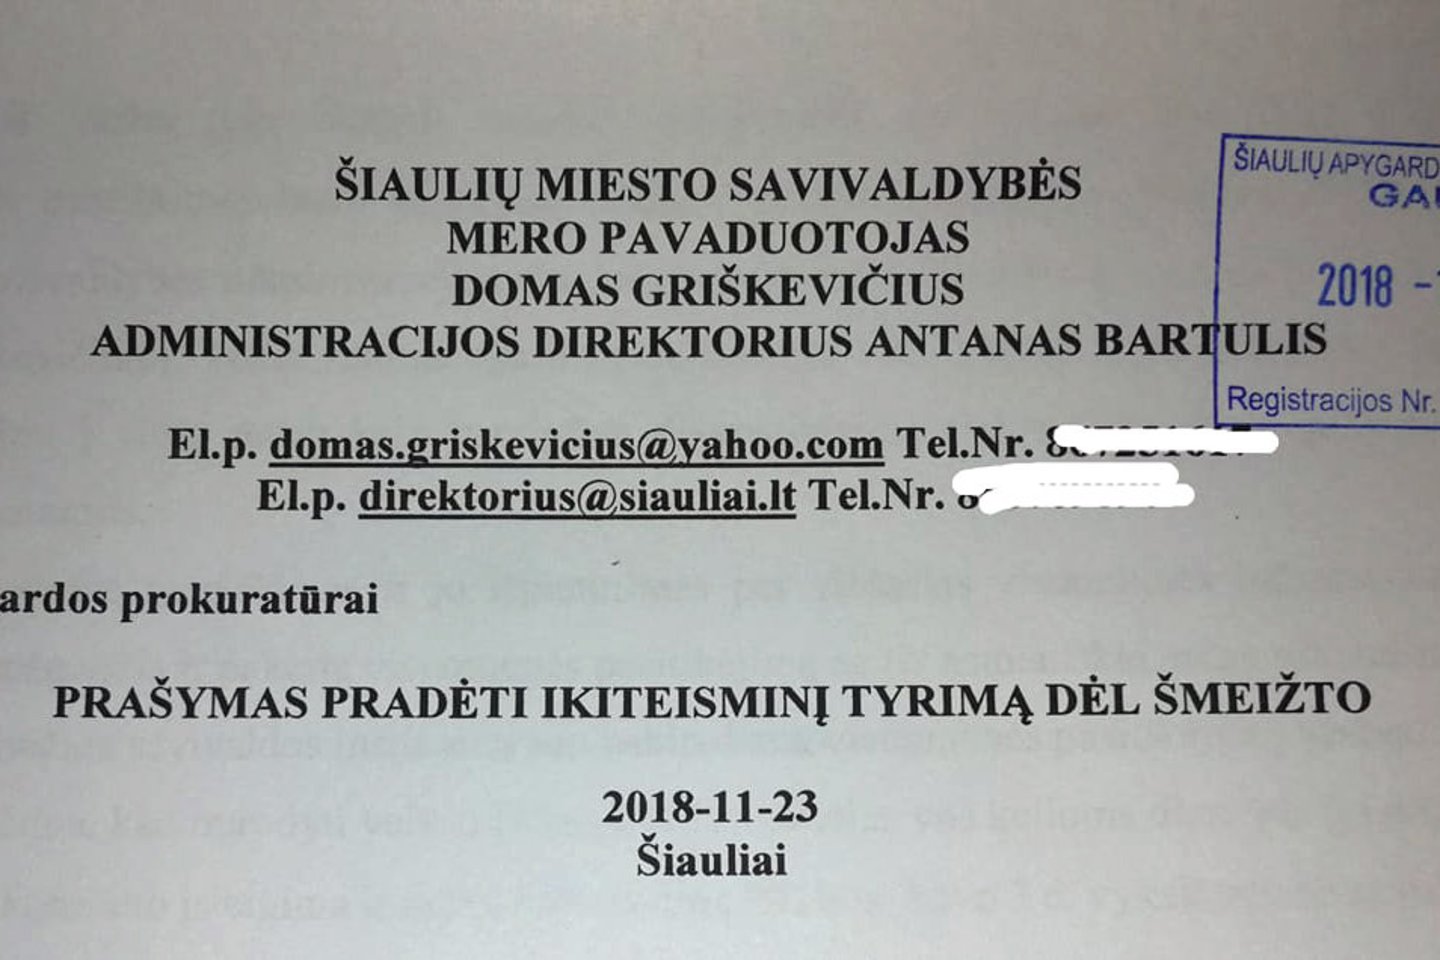 Šiaulių apygardos prokuratūrai išsiųstas prašymas pradėti ikiteisminį tyrimą dėl šmeižto.